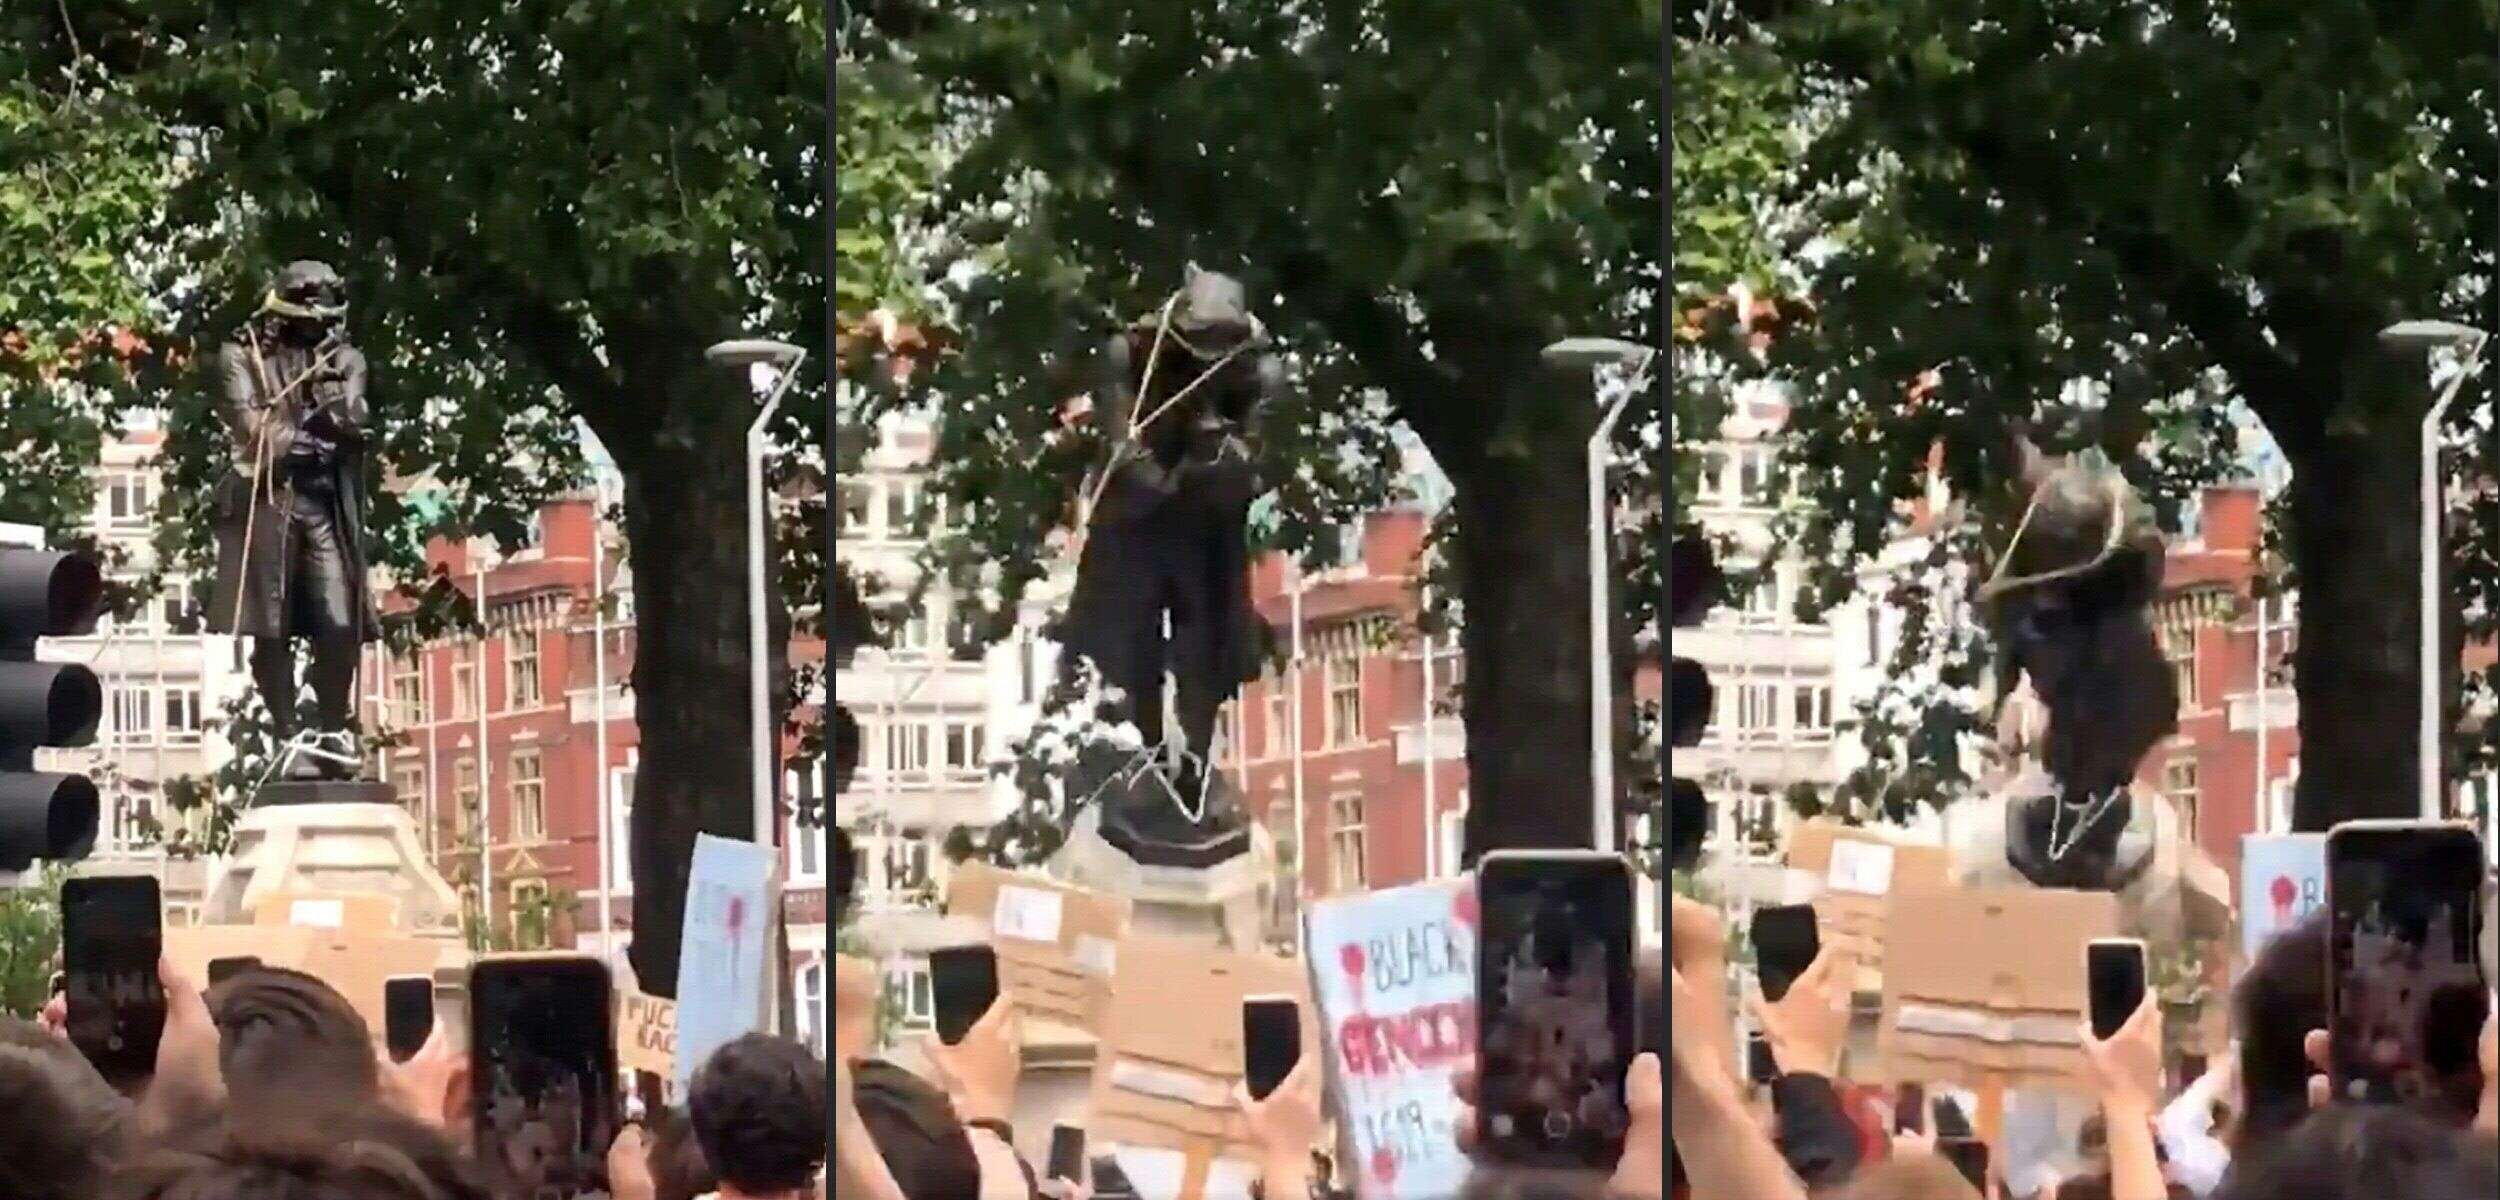 Des manifestants ont déboulonné une statue d'un important négrier mort au 18e siècle, Edward Colston, ce dimanche à Bristol, en Angleterre.